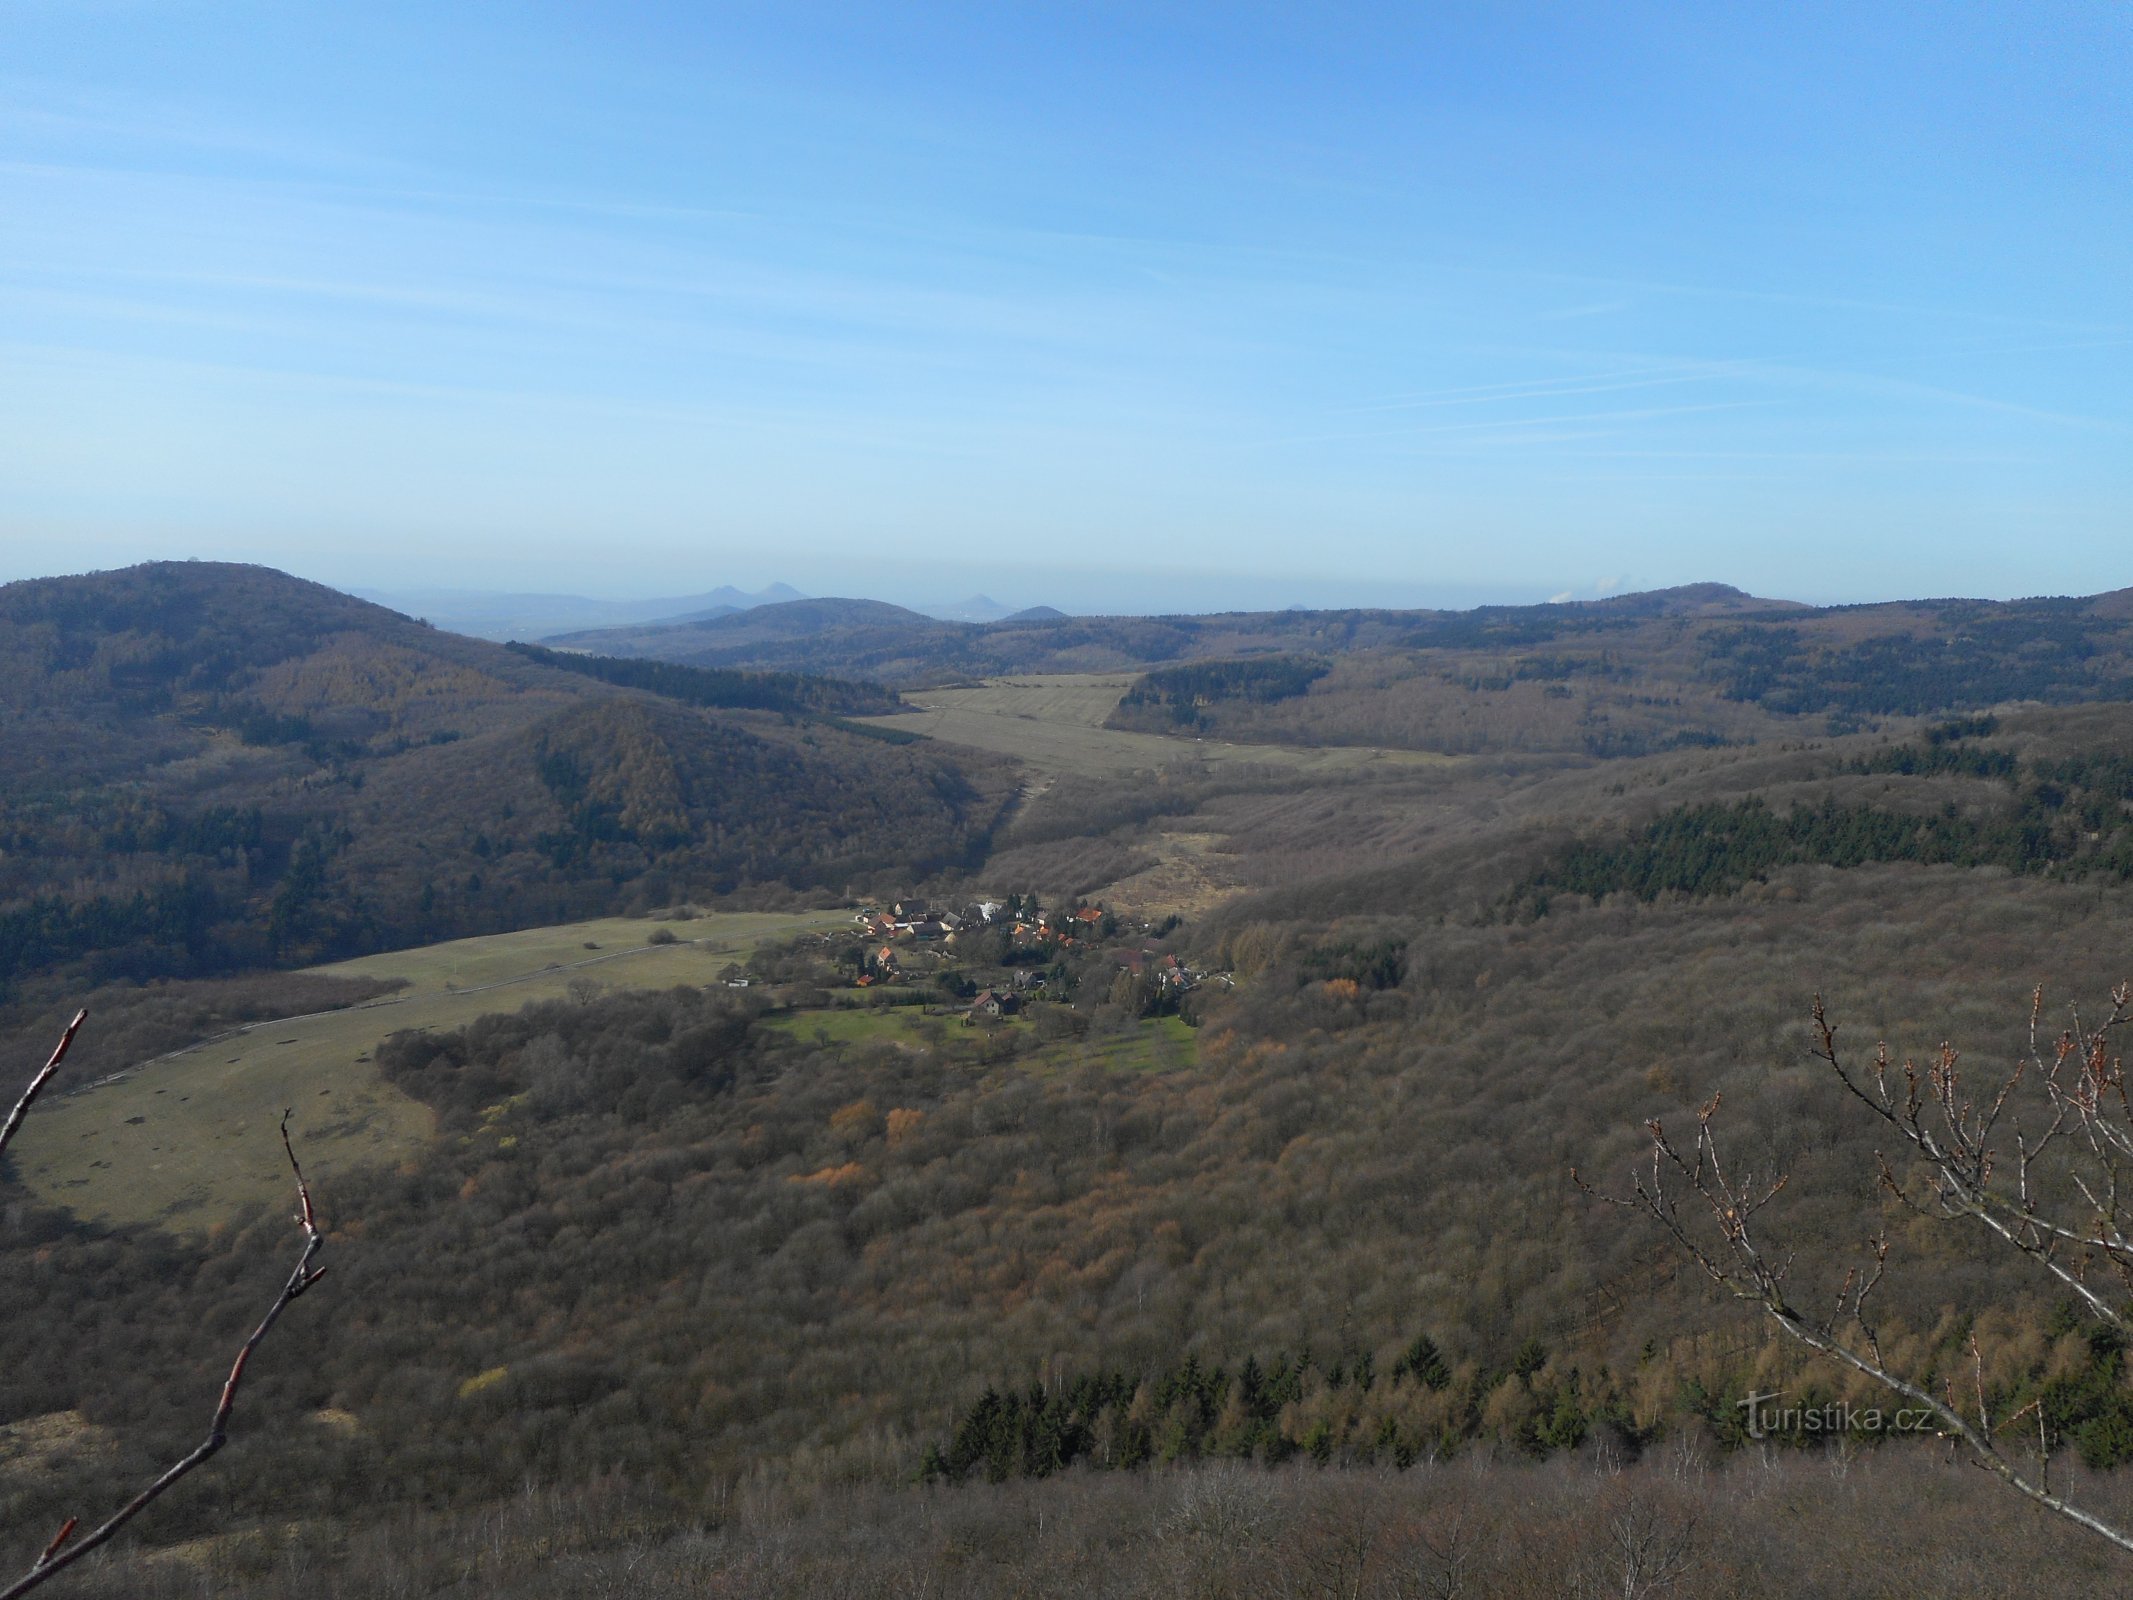 Utsikten från Lipská hora västerut...